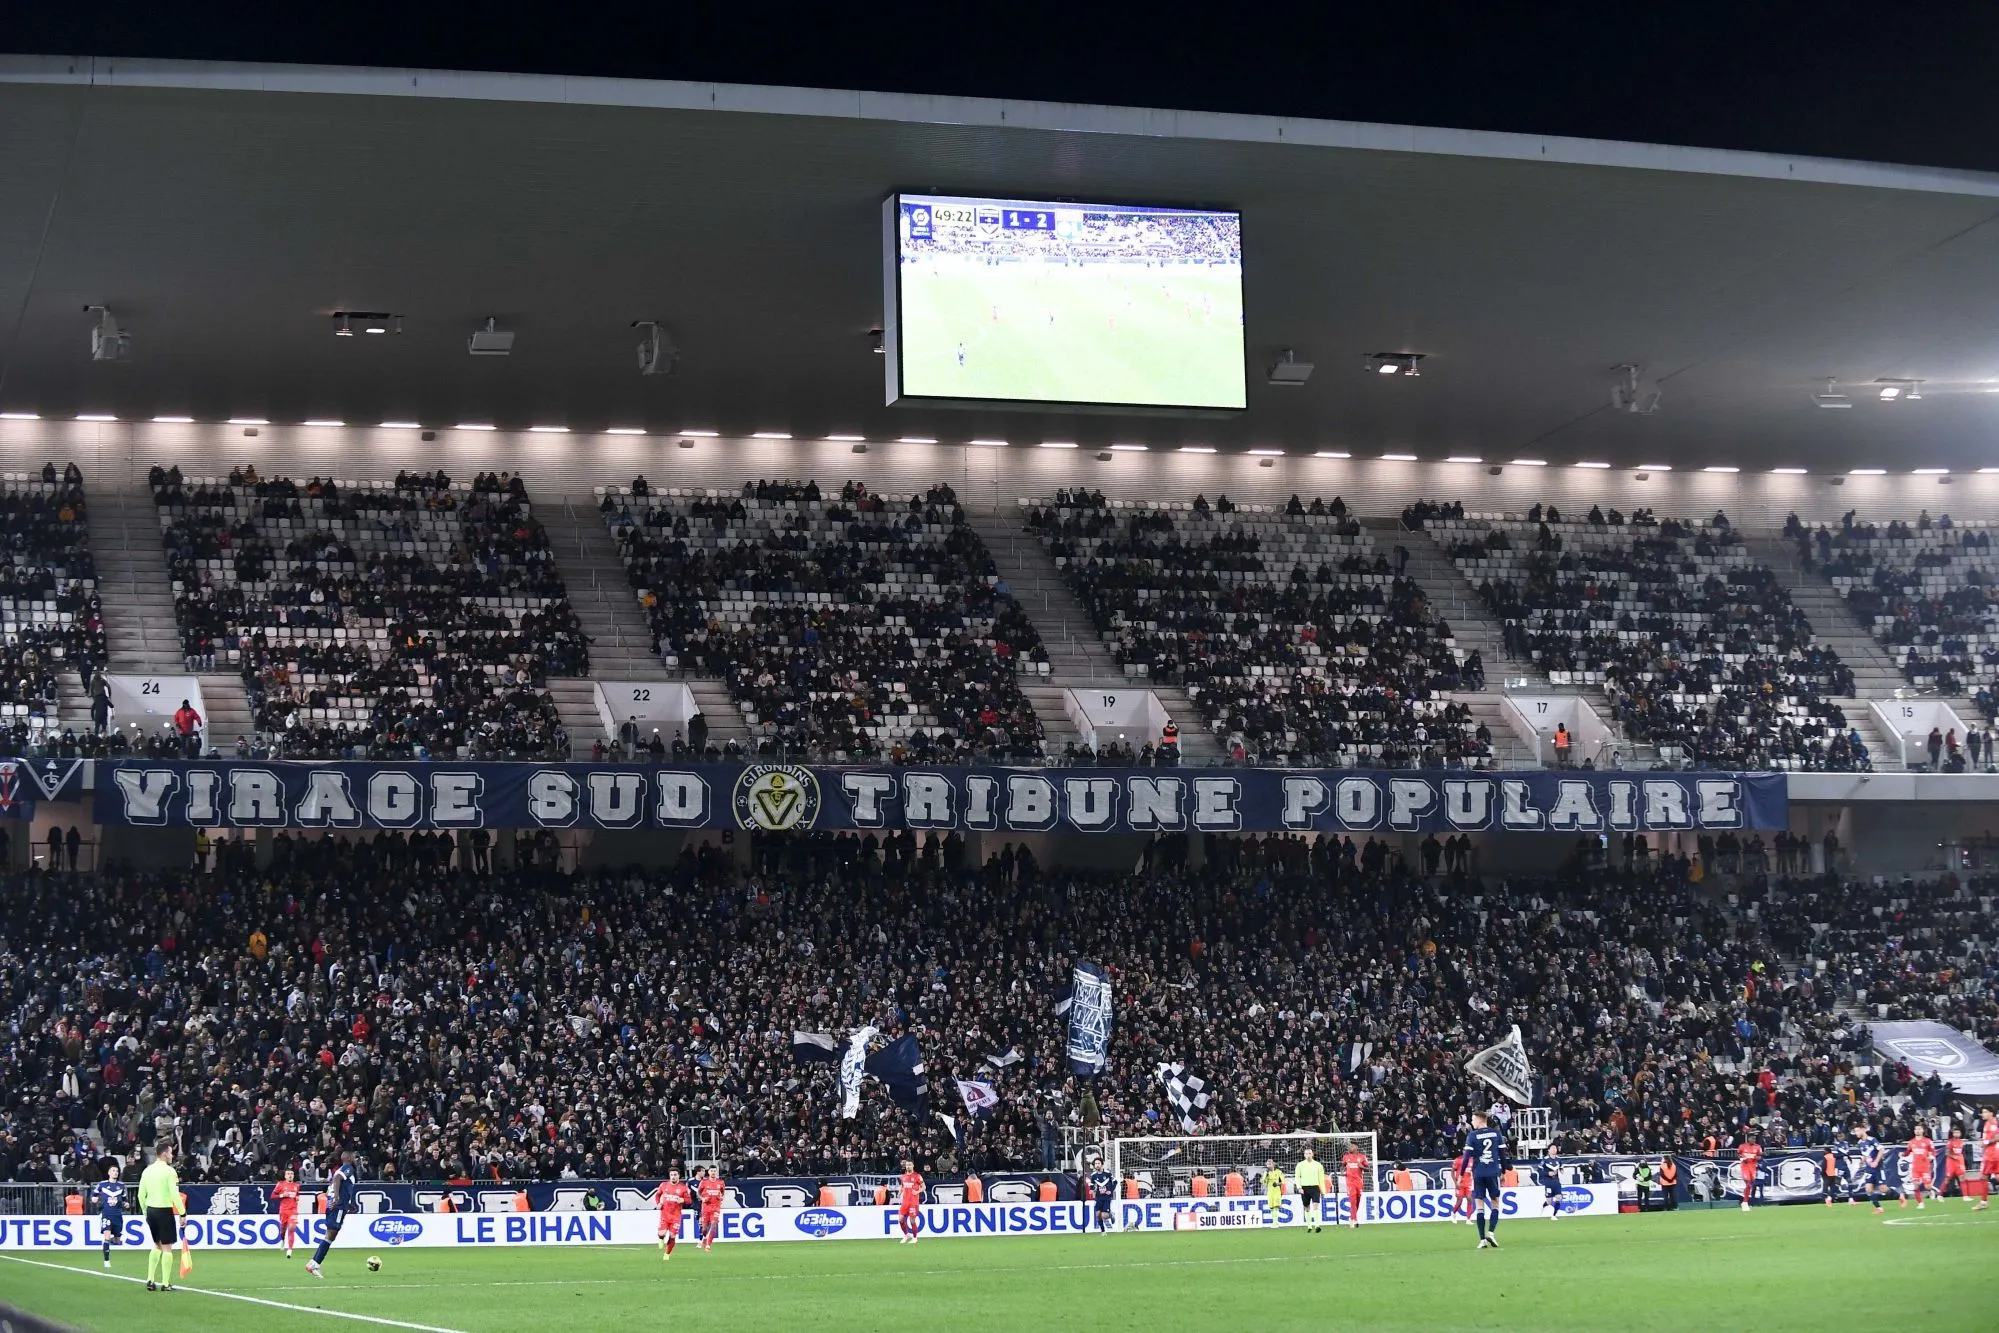 «<span style="font-size:50%">&nbsp;</span>Bordeaux prend droit le chemin de la Ligue 2<span style="font-size:50%">&nbsp;</span>» selon les Ultramarines